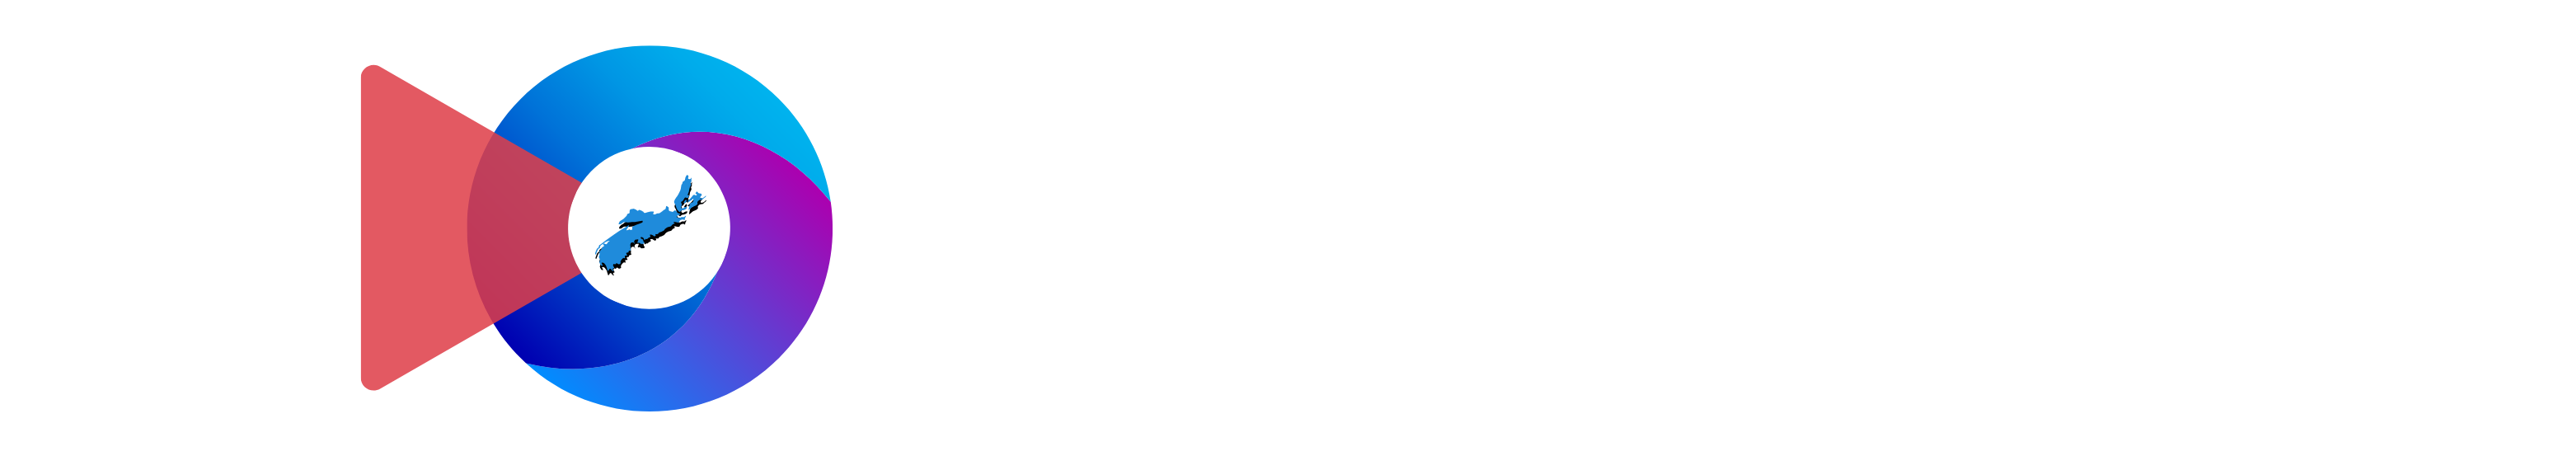 Stevenson Media Group